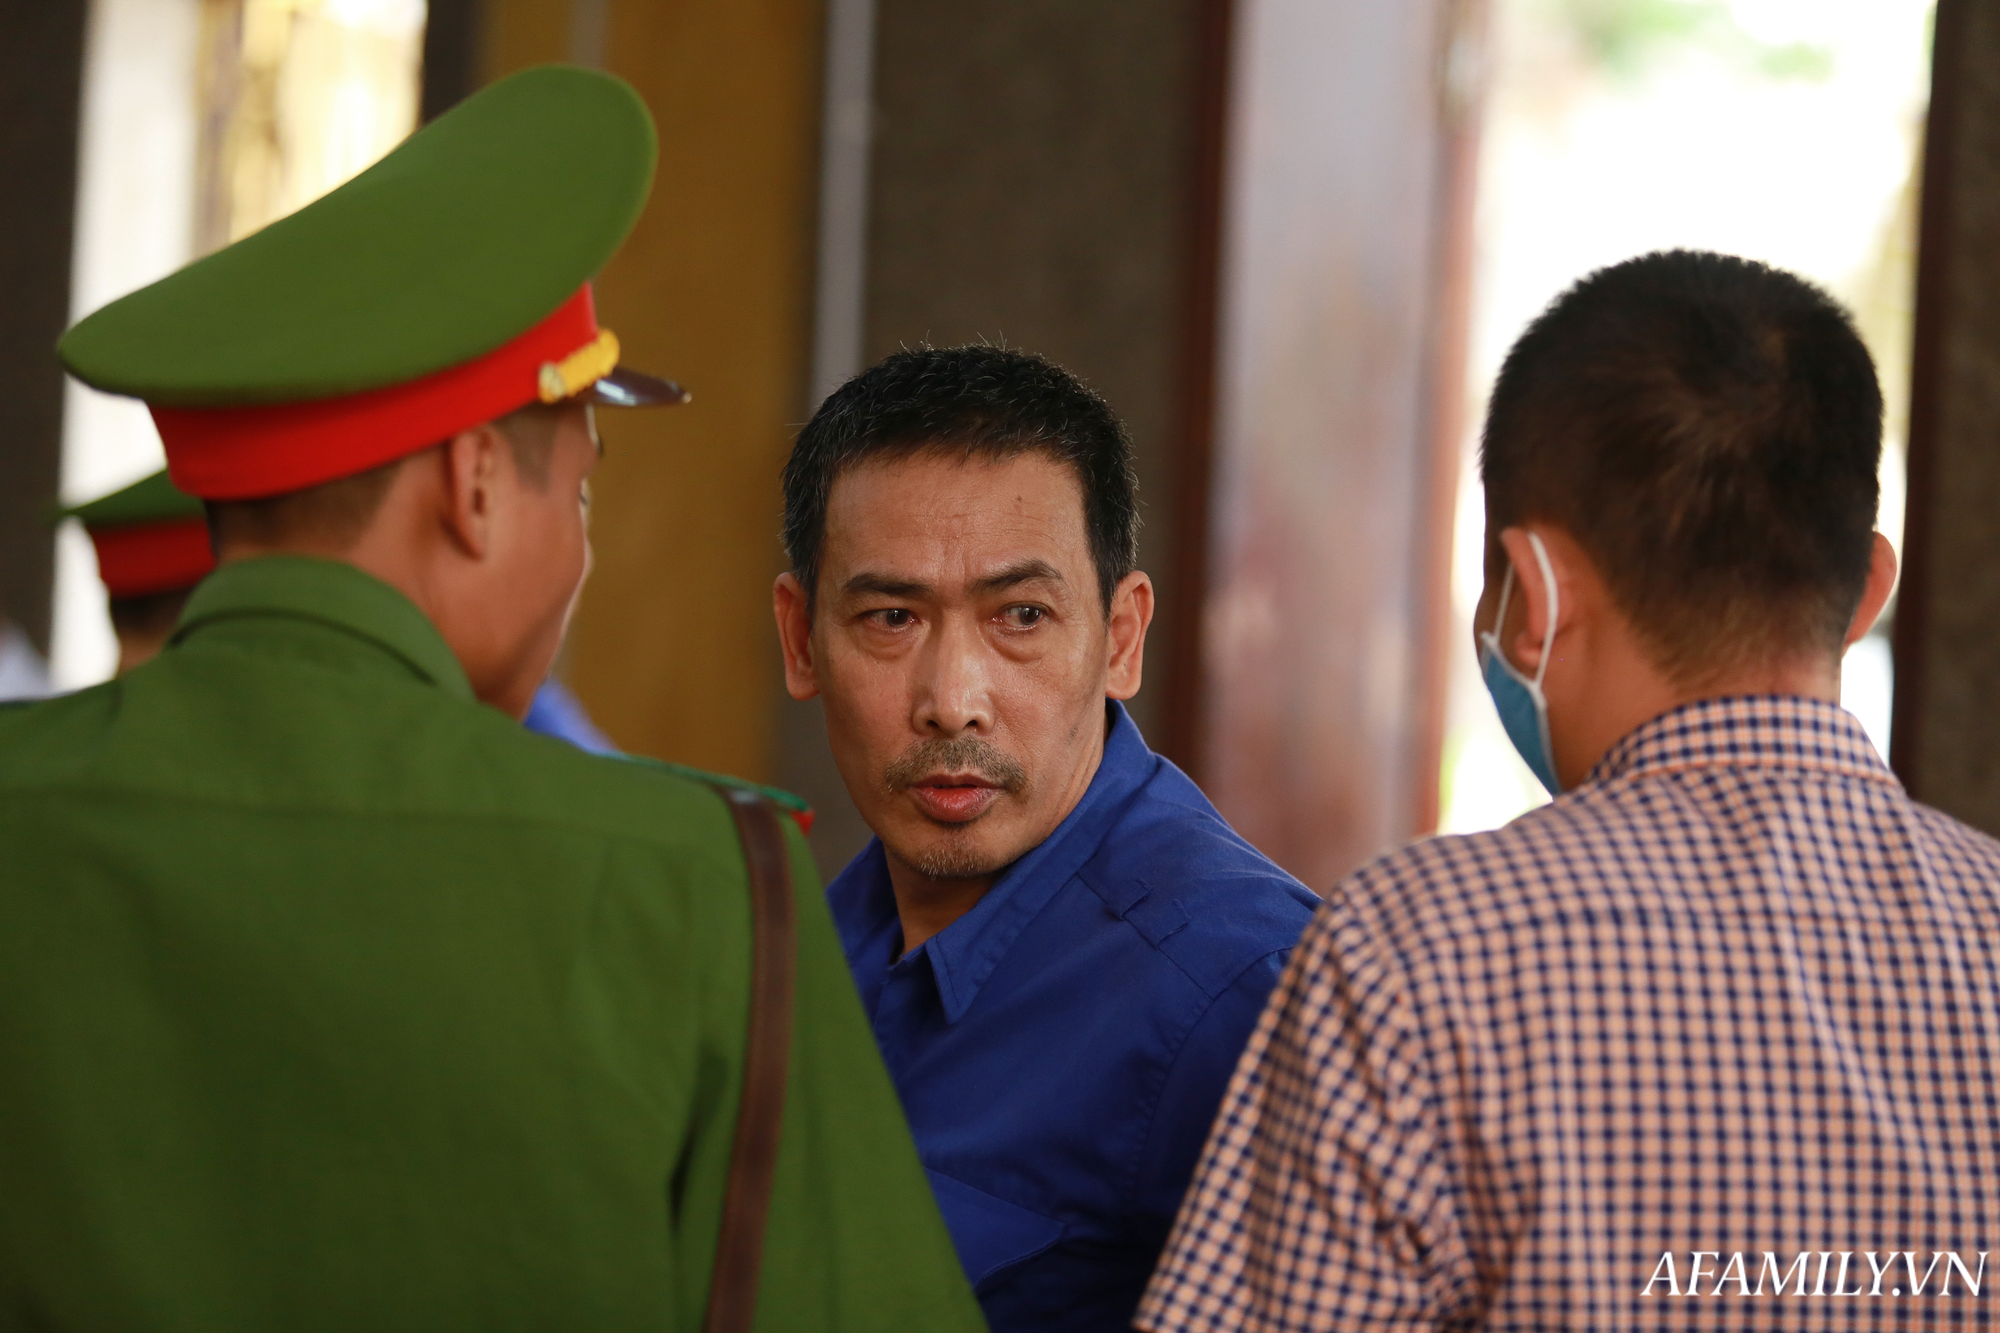 Trưởng phòng Khảo thí Sở GD&ĐT Sơn La bị đề nghị mức án 25 năm tù về tội nâng điểm và nhận hối lộ hơn 1 tỷ đồng - Ảnh 5.